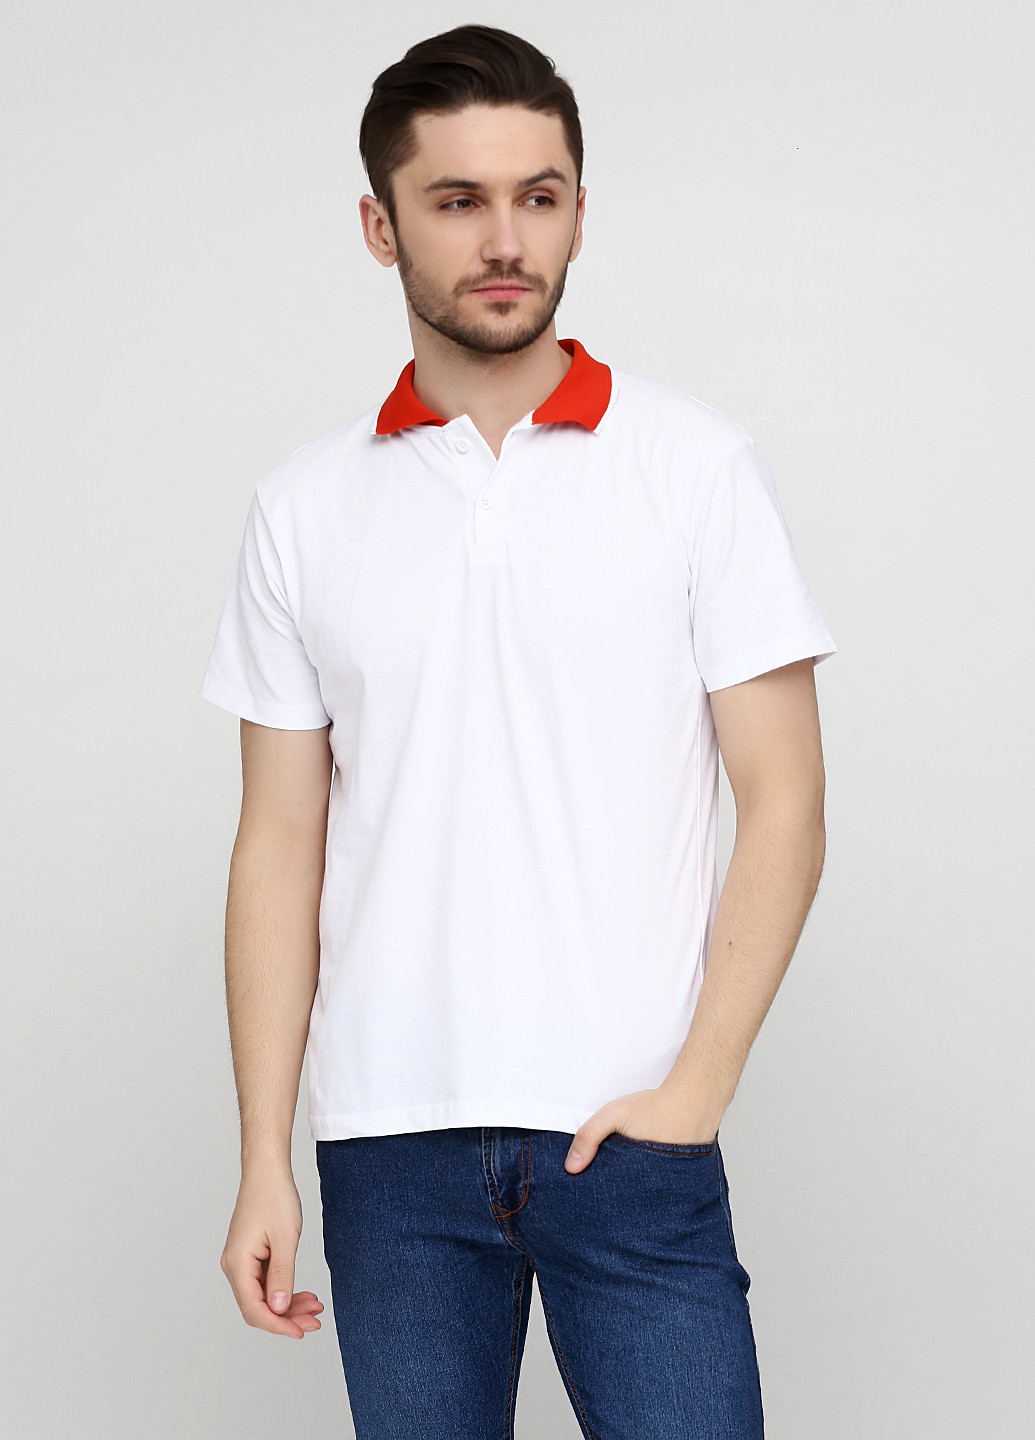 Белая футболка-поло для мужчин Chiarotex однотонная